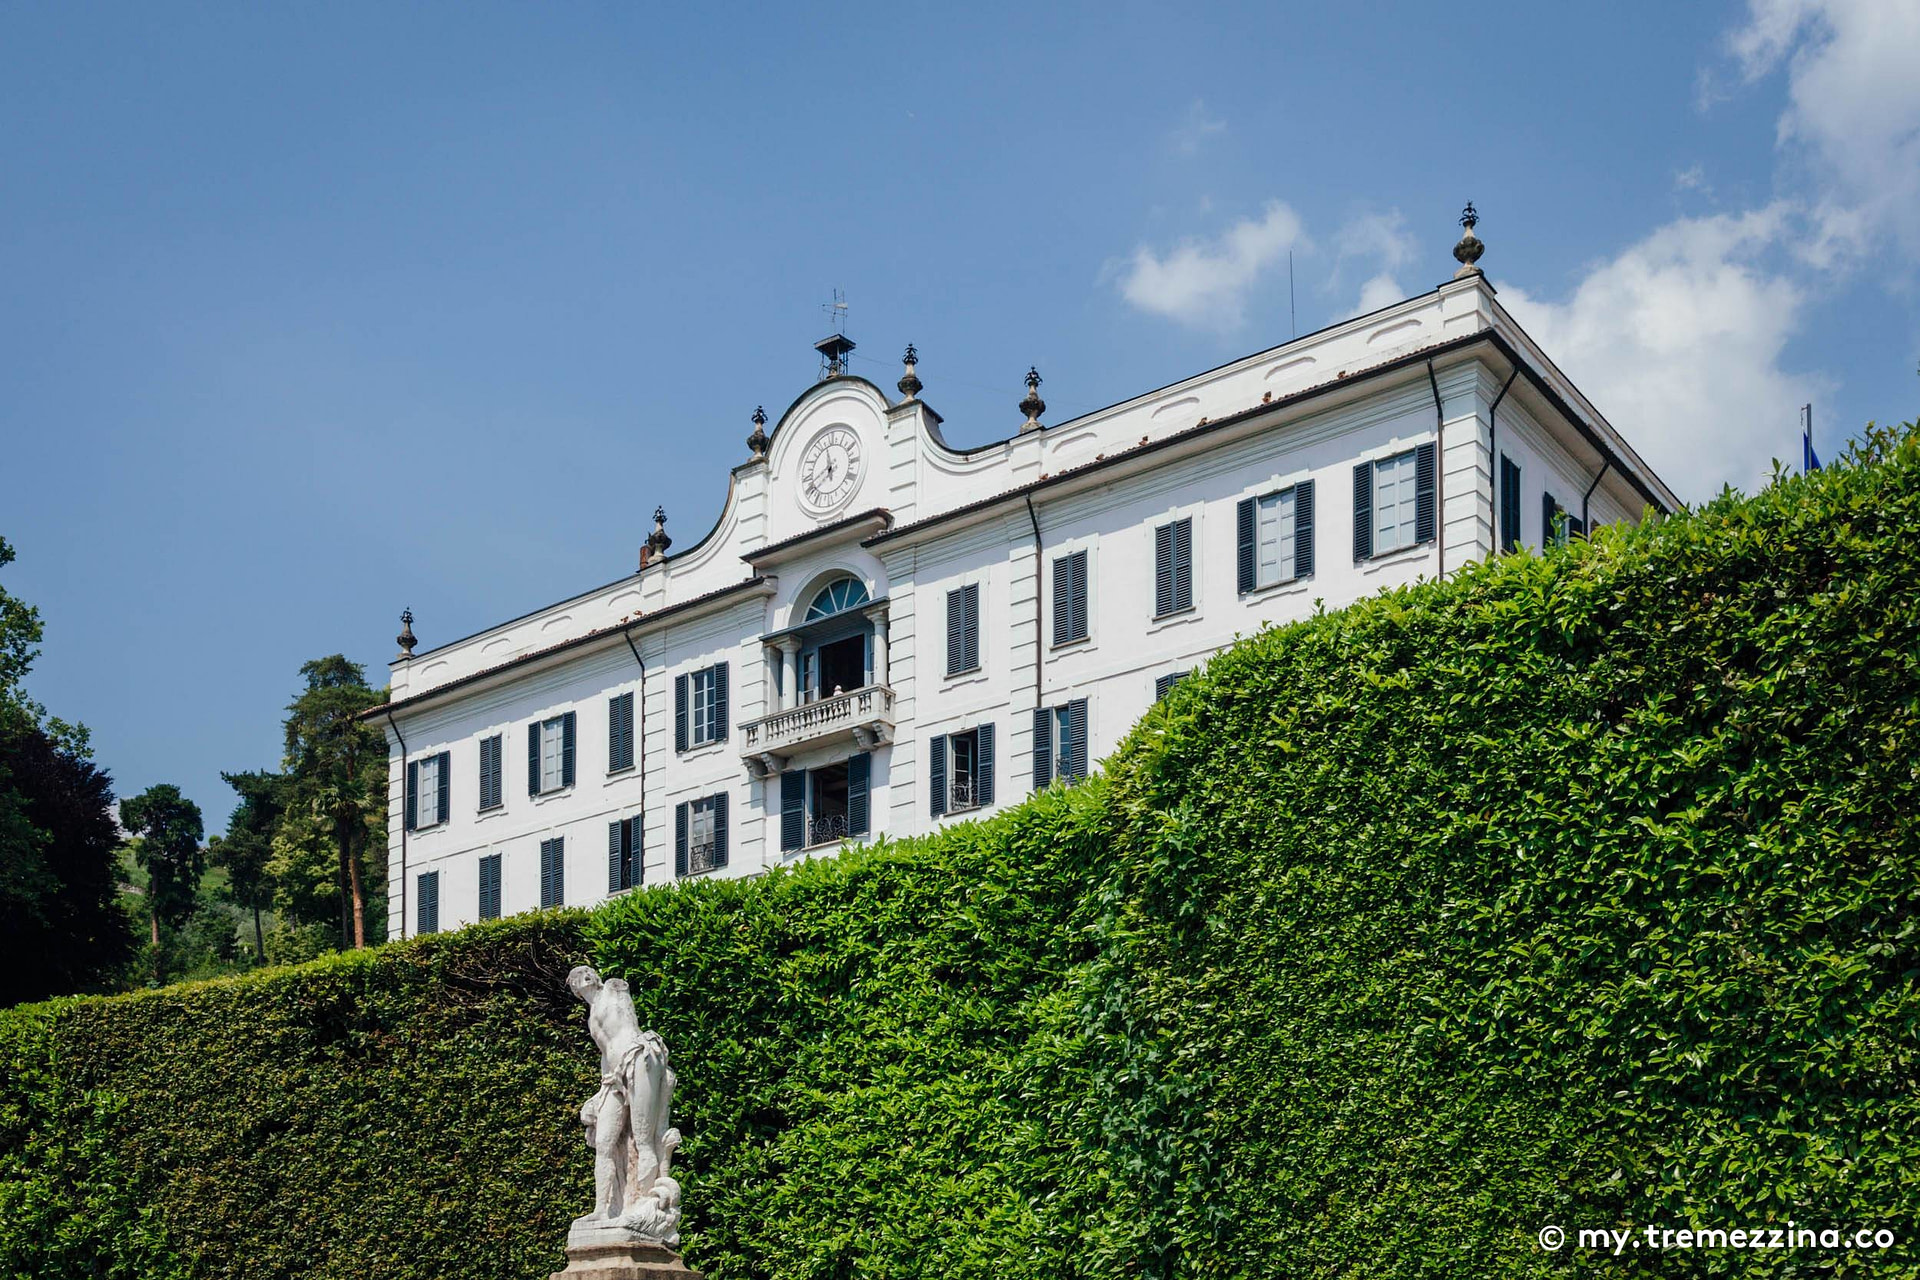 Villa Carlotta - Tremezzo - Tremezzina